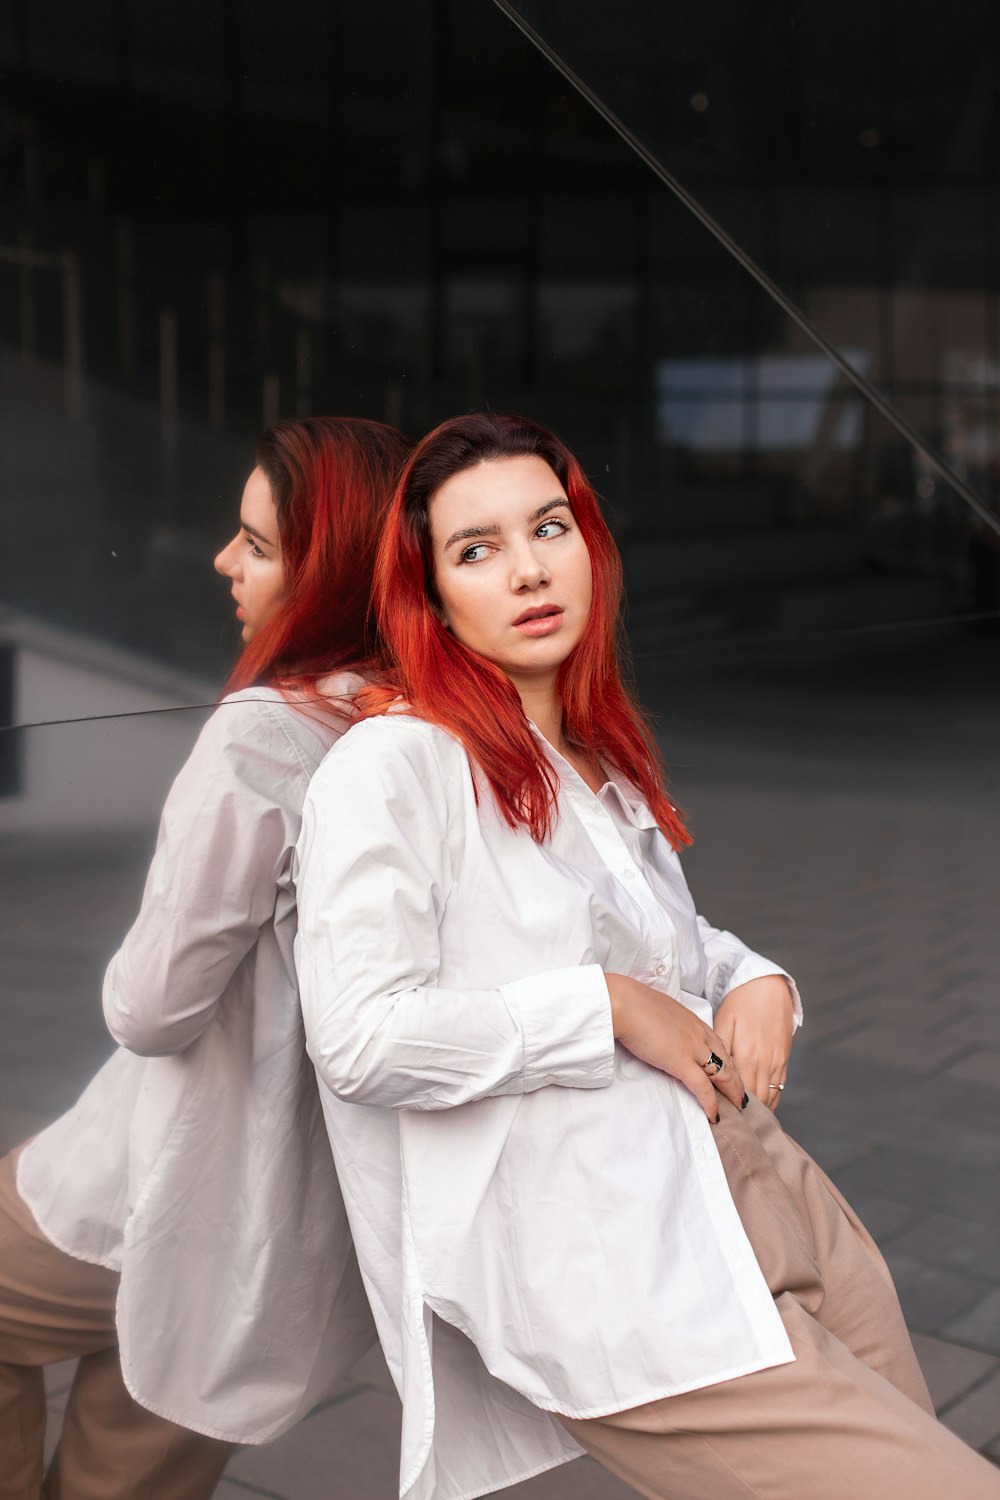 Eine Frau mit roten Haaren sitzt auf einer Bank